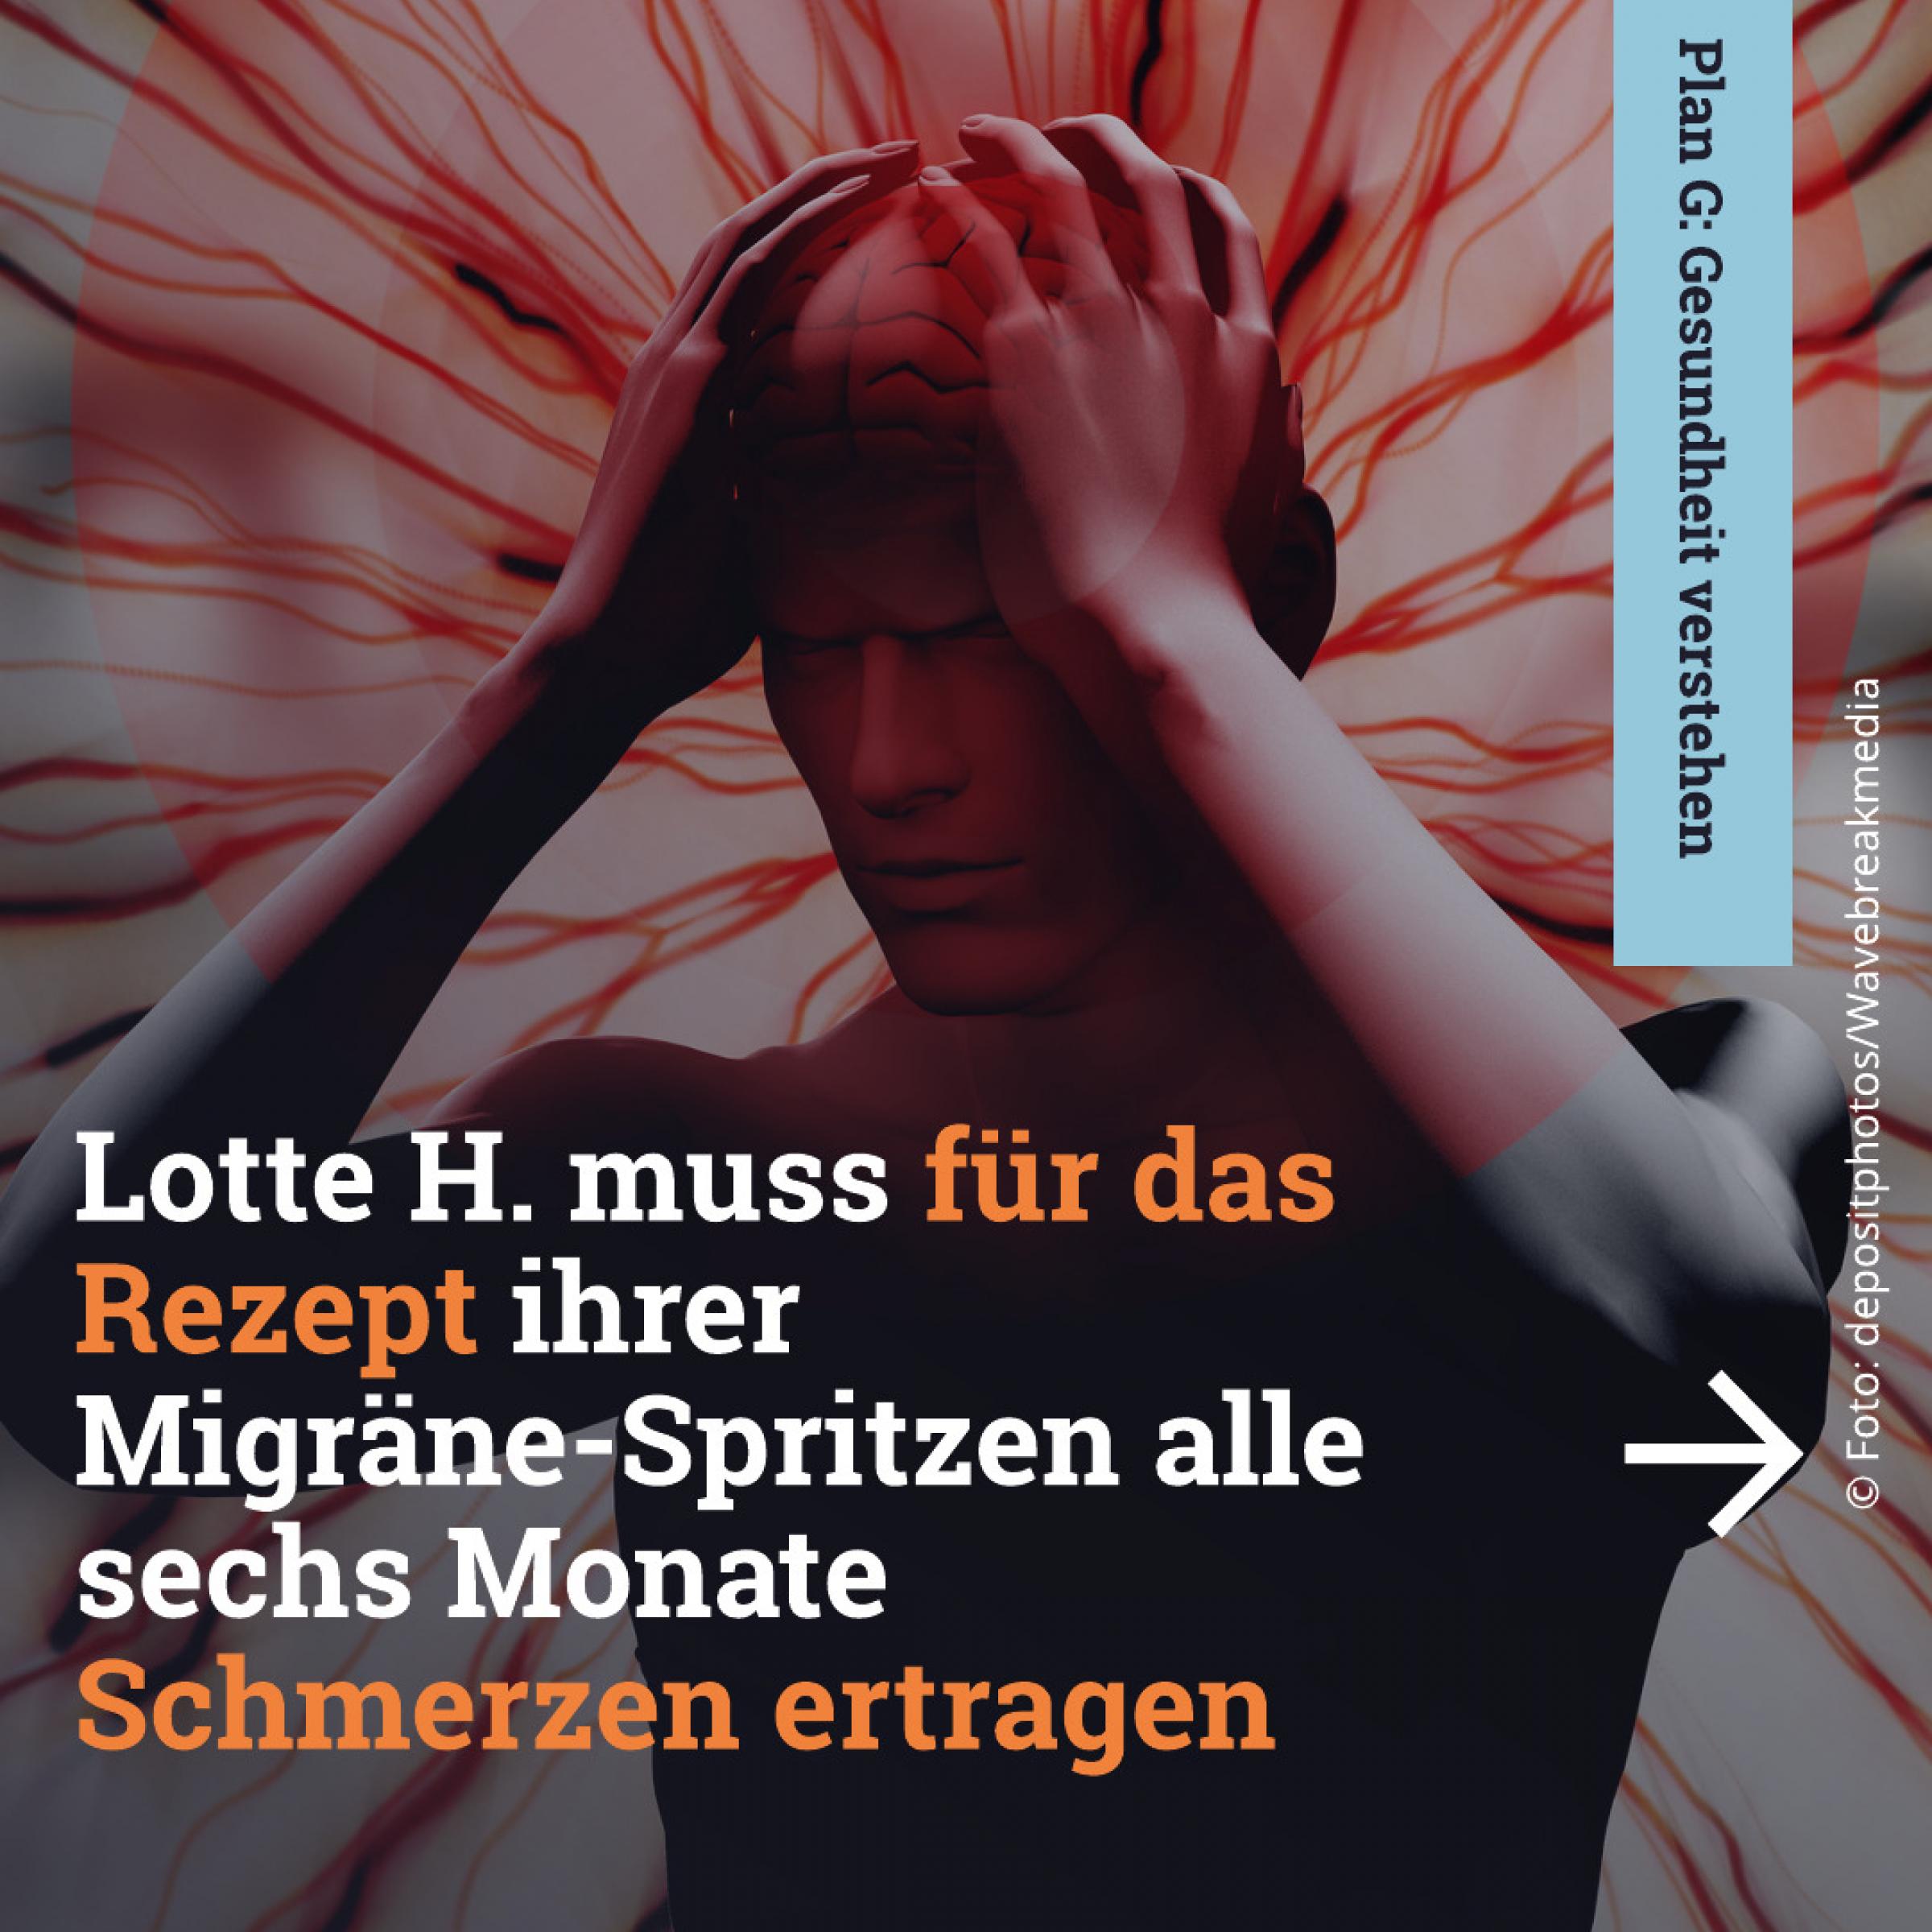 Lotte H. muss für das Rezept ihrer Migräne-Spritzen alle sechs Monate Schmerzen ertragen